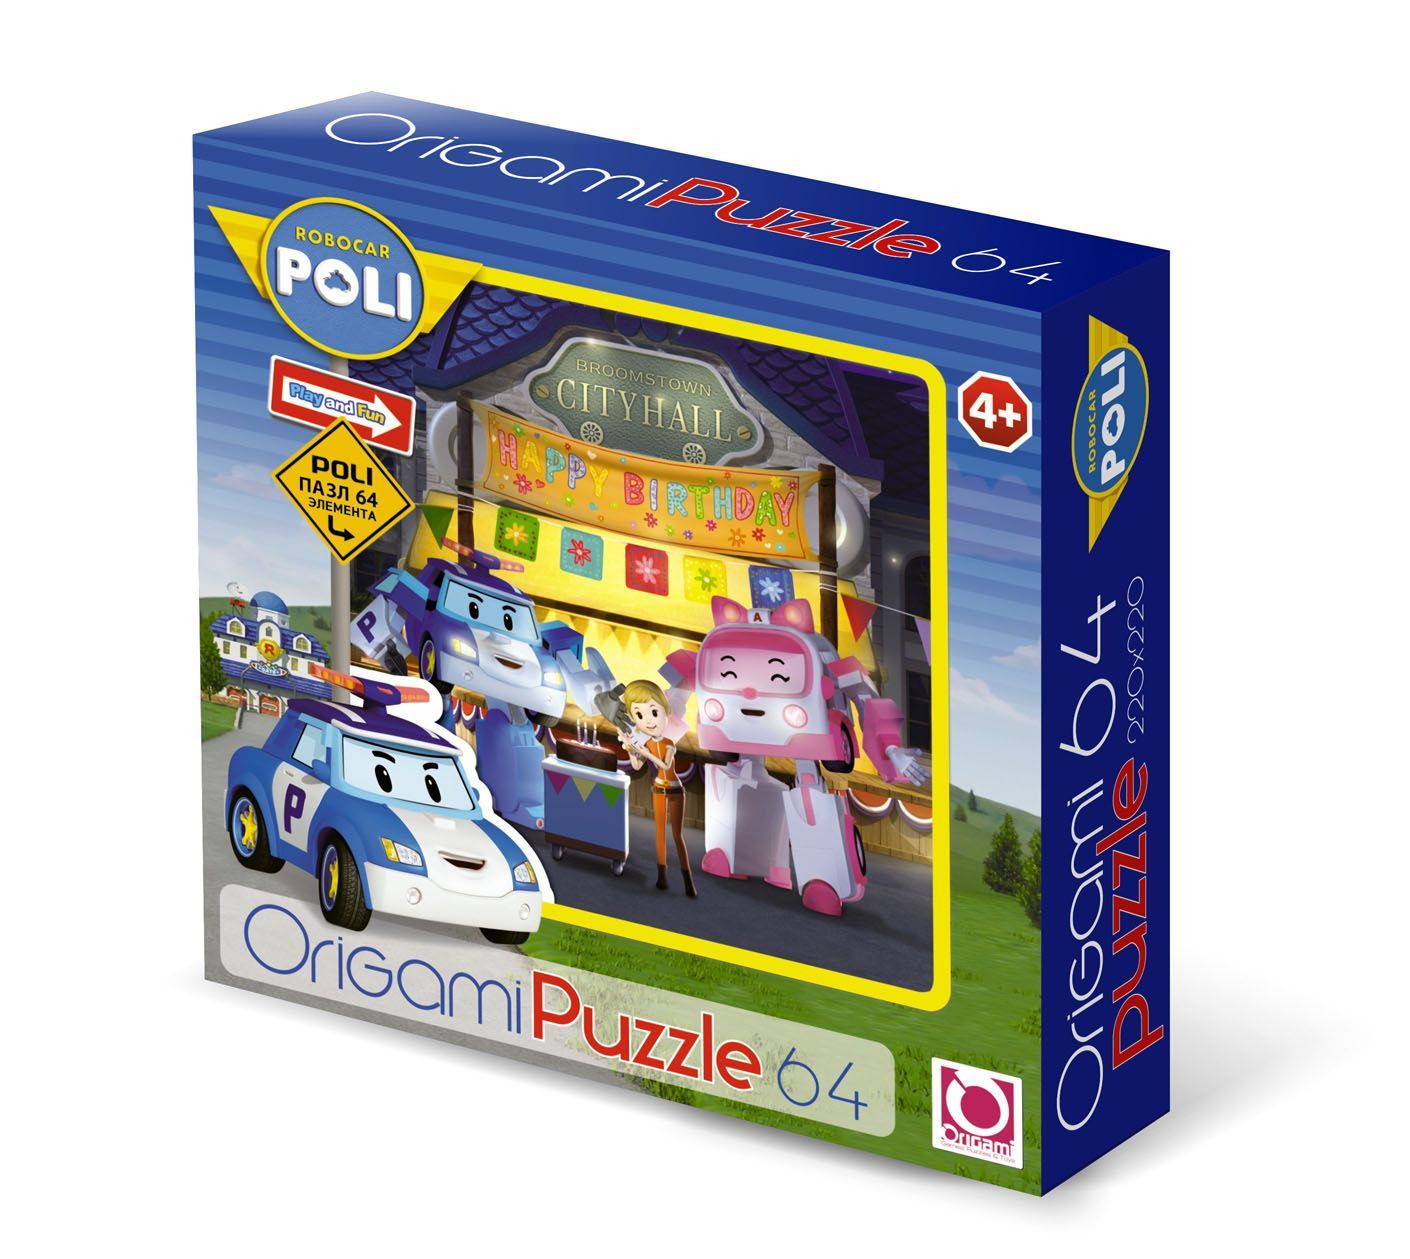 Головоломки поли. Пазл Origami Robocar Poli день рождения Джин (05904), 64 дет.. Пазл Origami Robocar. Робокар Поли Джин игрушка. Пазл "Robocar", 64 элемента.